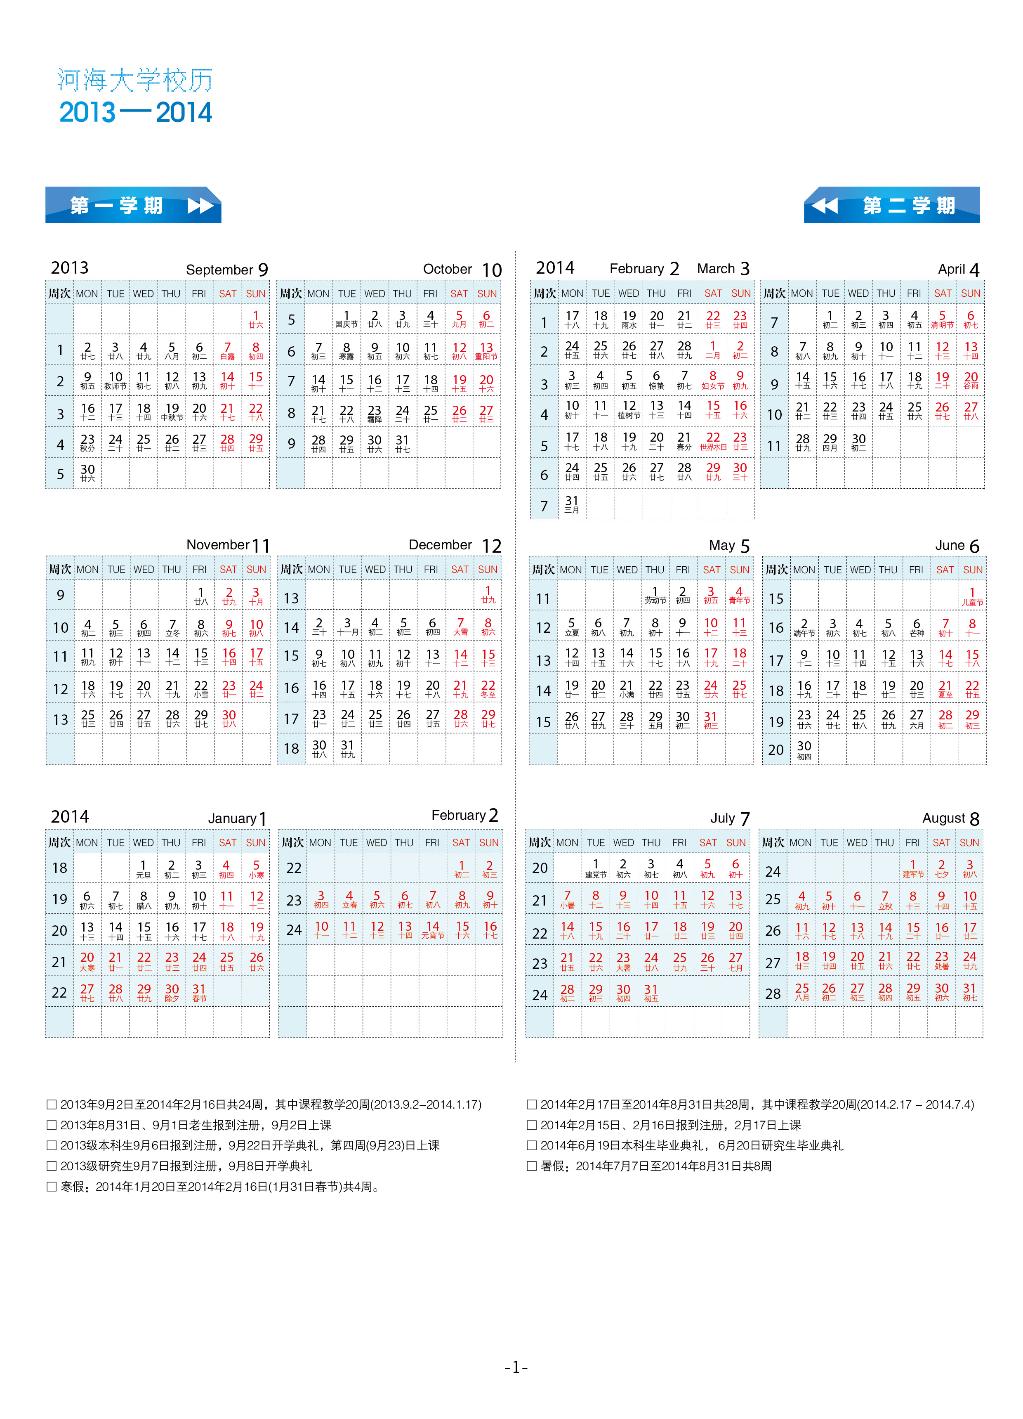 河海大学2013-2014学年校历